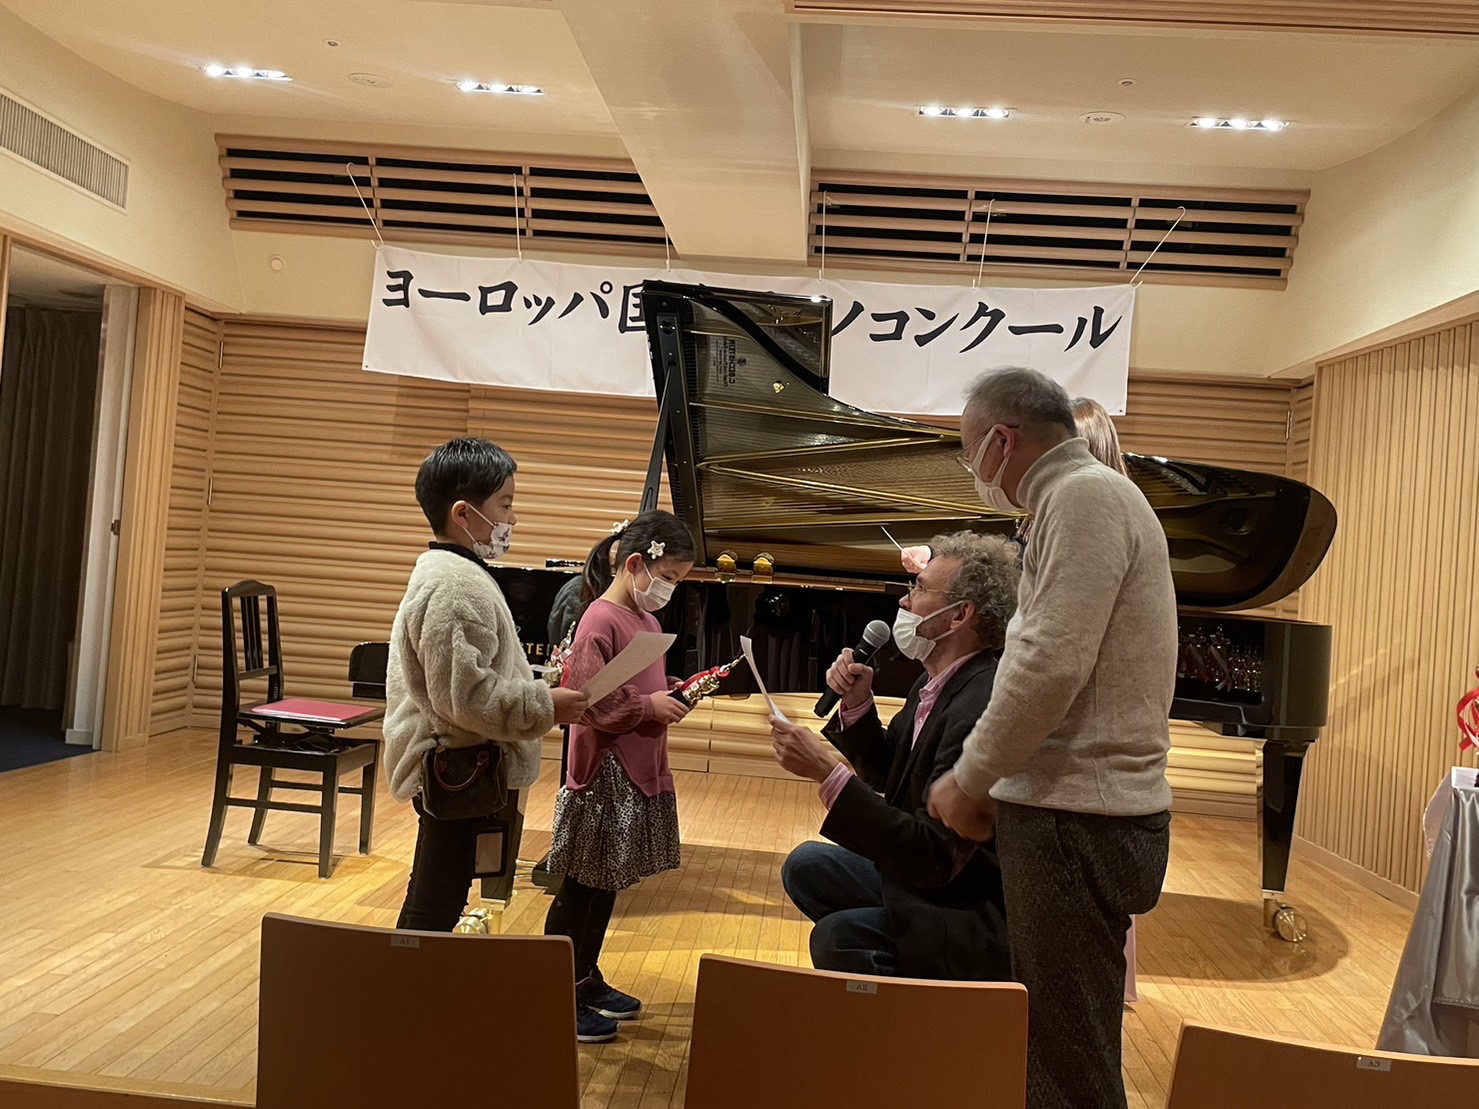 第13回ヨーロッパ国際ピアノコンクールin Japan 全国大会